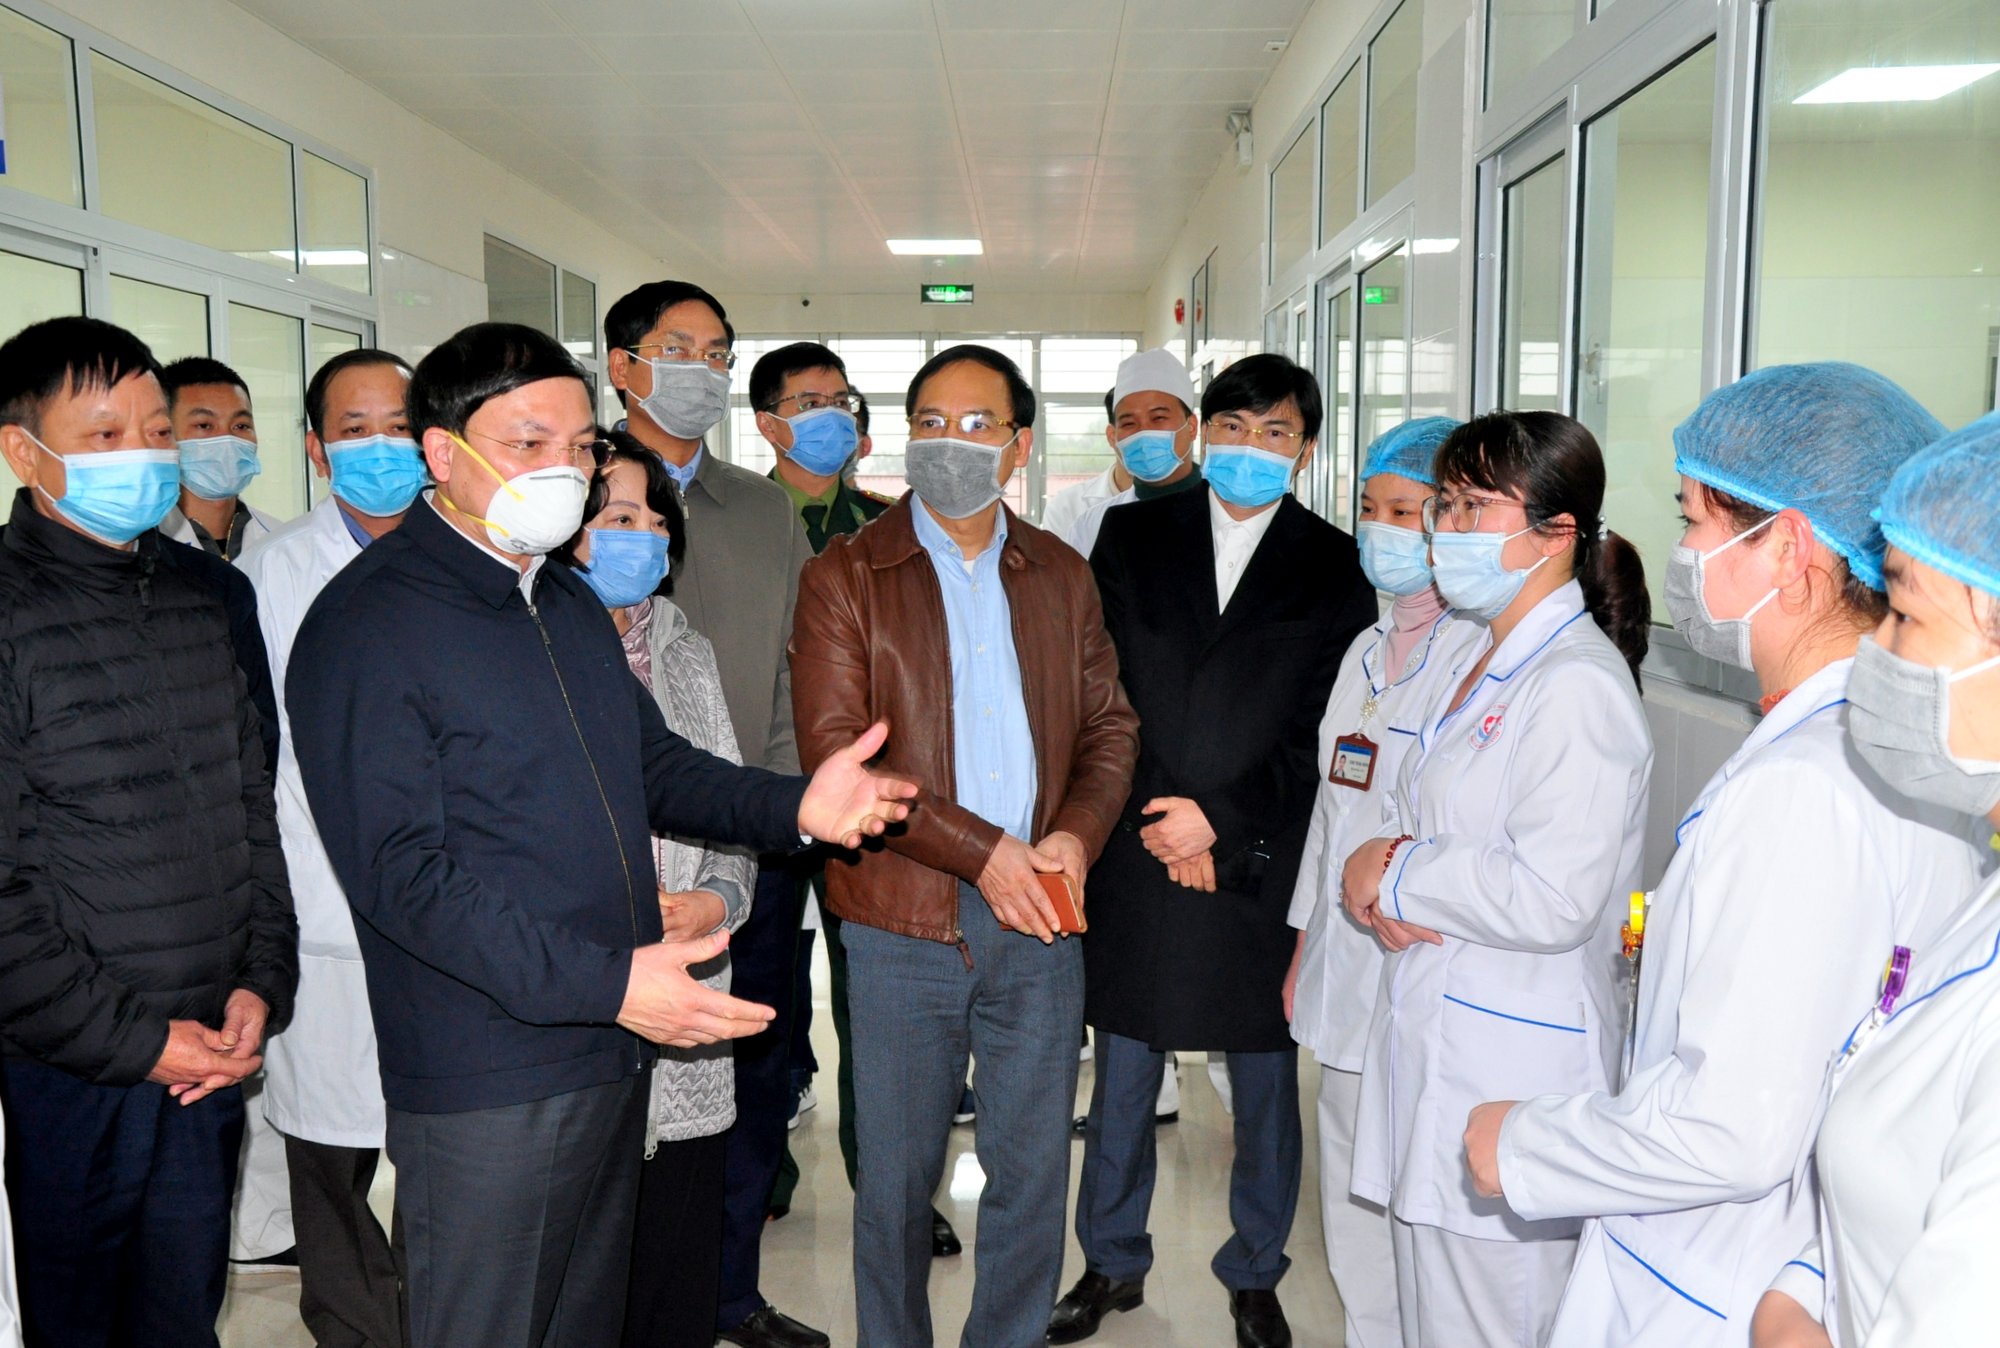 Đồng chí Nguyễn Xuân Ký cùng các đồng chí lãnh đạo tỉnh, lãnh đạo các sở, ngành động viên các cán bộ, y, bác sĩ làm nhiệm vụ trực tiếp tại khu bệnh viện cách ly đặc biệt.